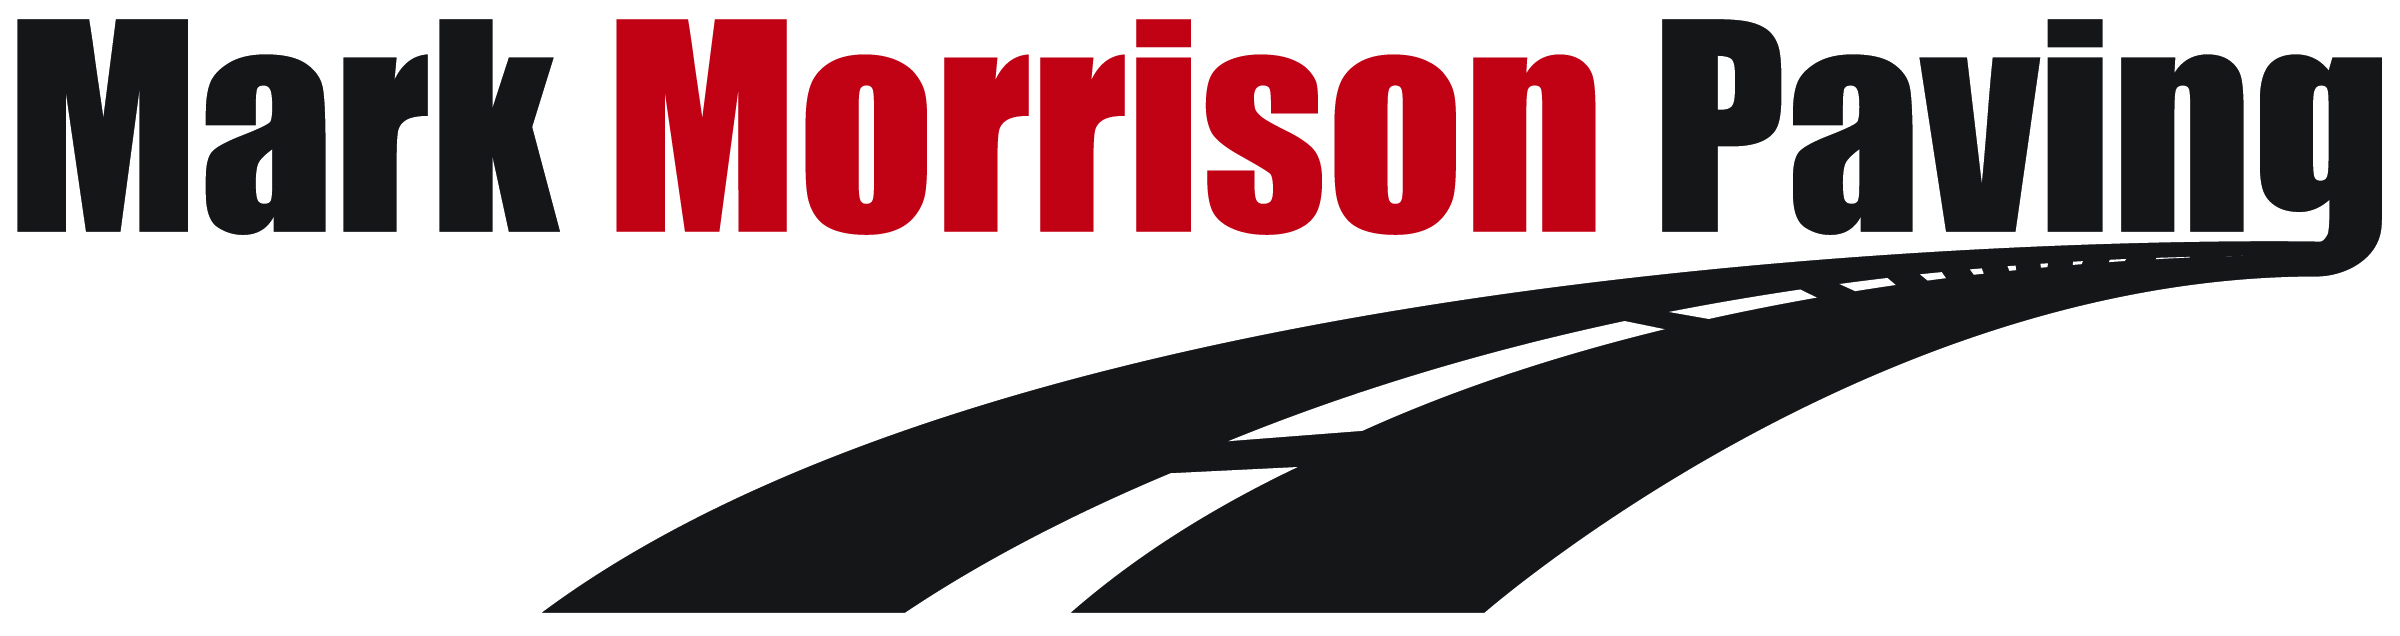 Mark Morrison Paving, LLC Logo